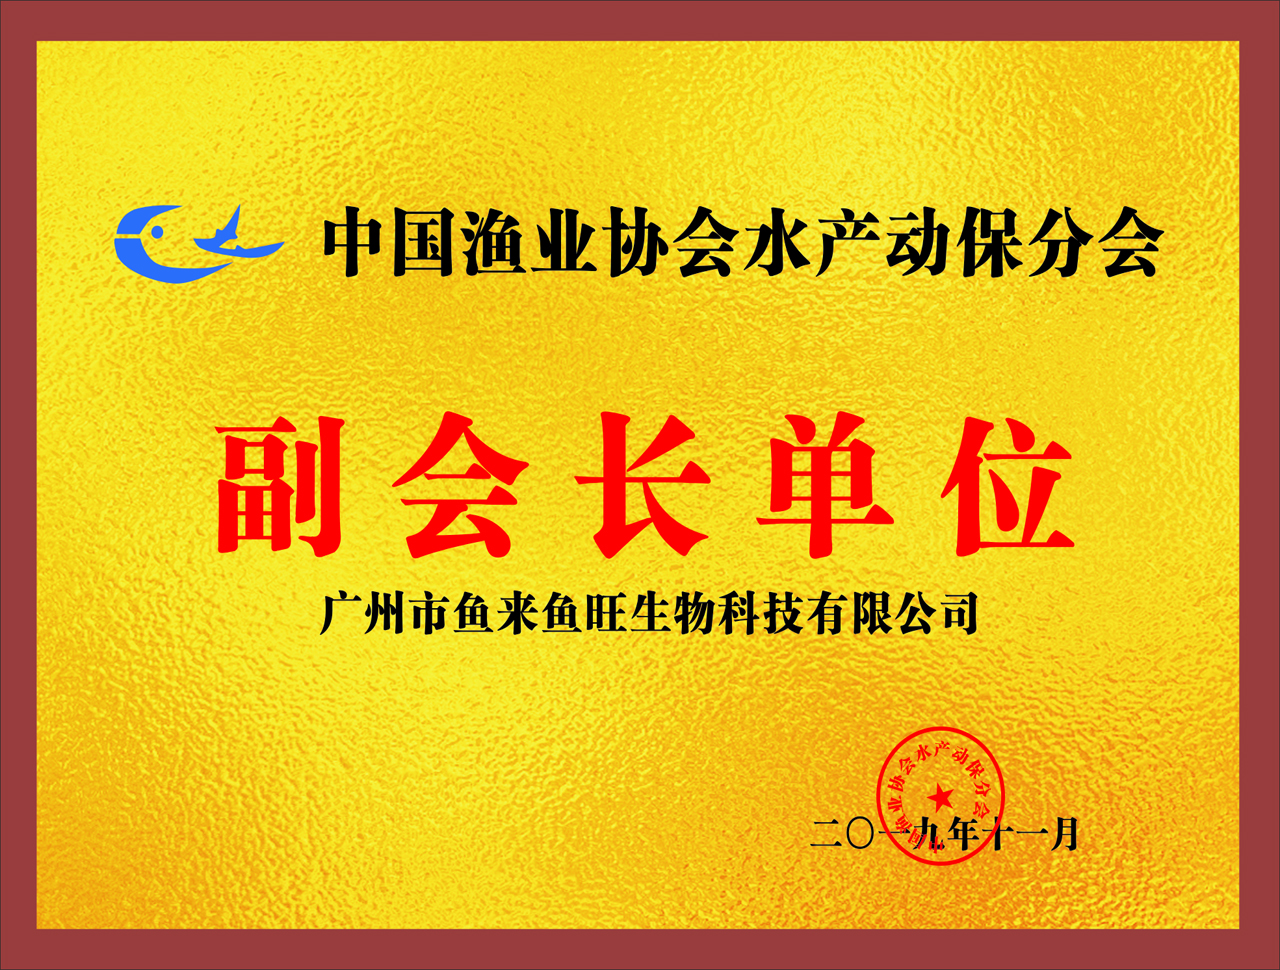 中国渔业协会水产动保分会副会长单位